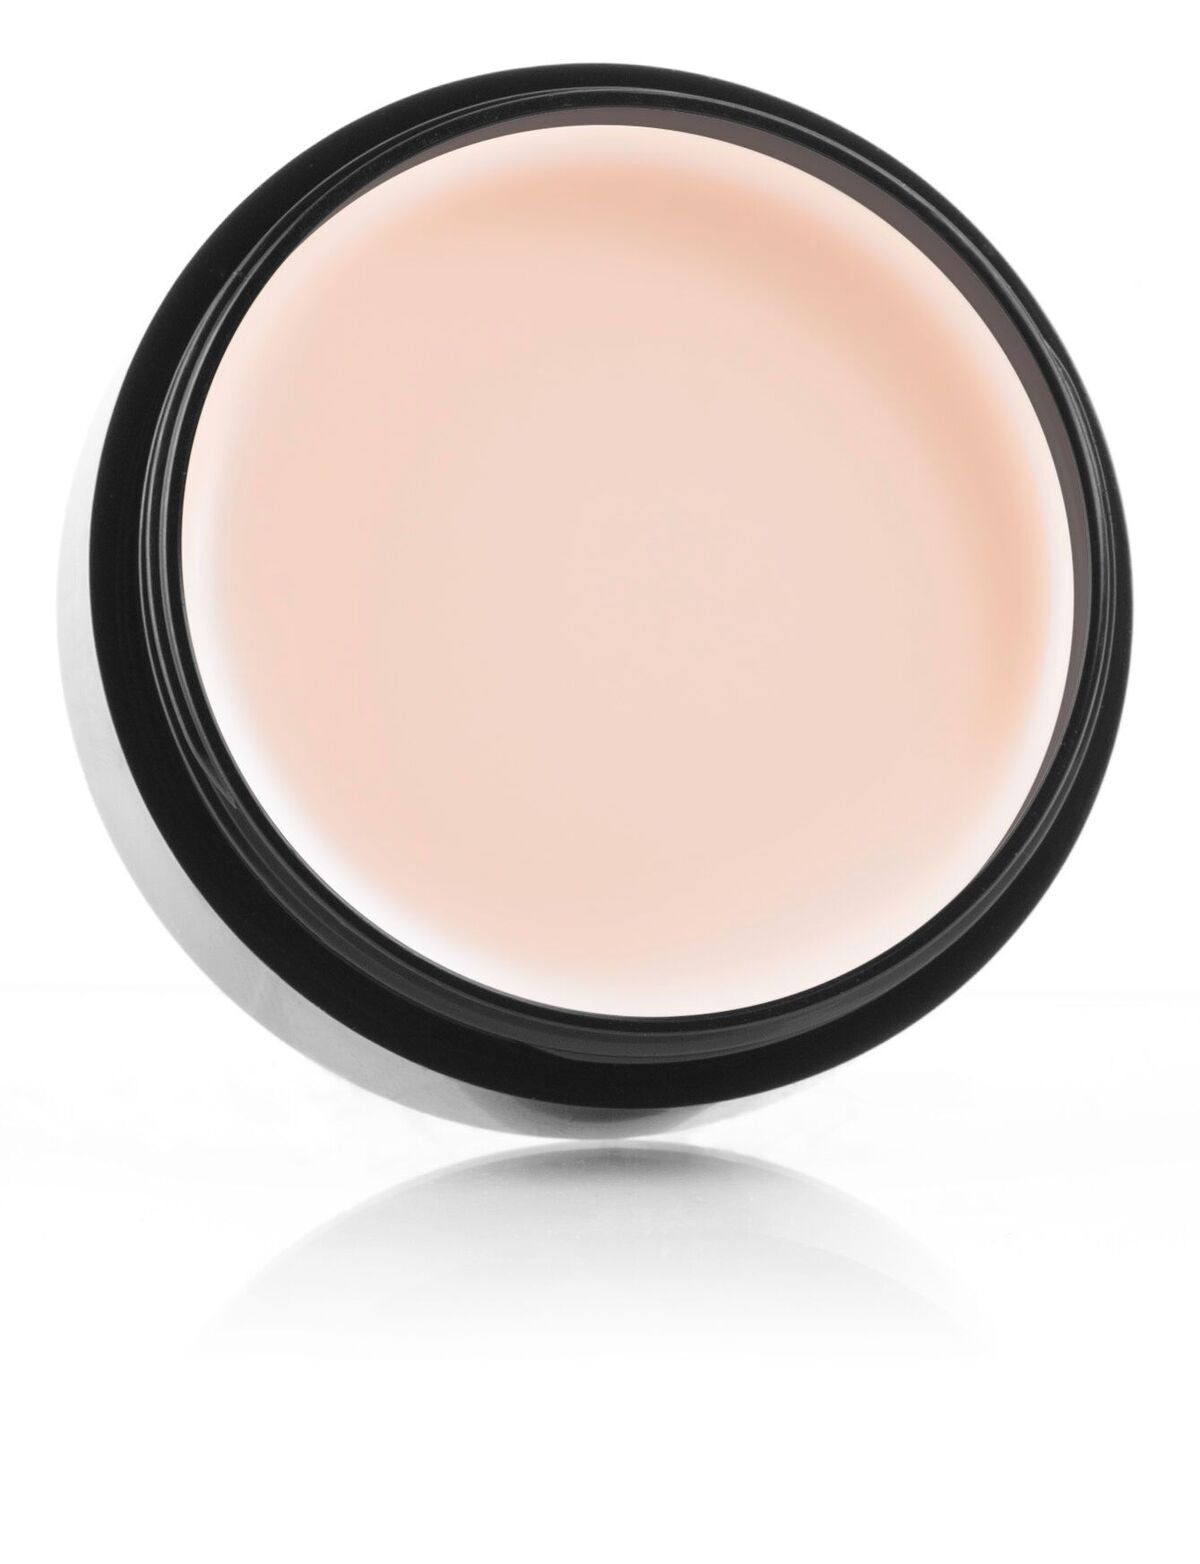 Mehron Makeup Celebre Pro HD Cream Foundation - (Light 2) - ADDROS.COM